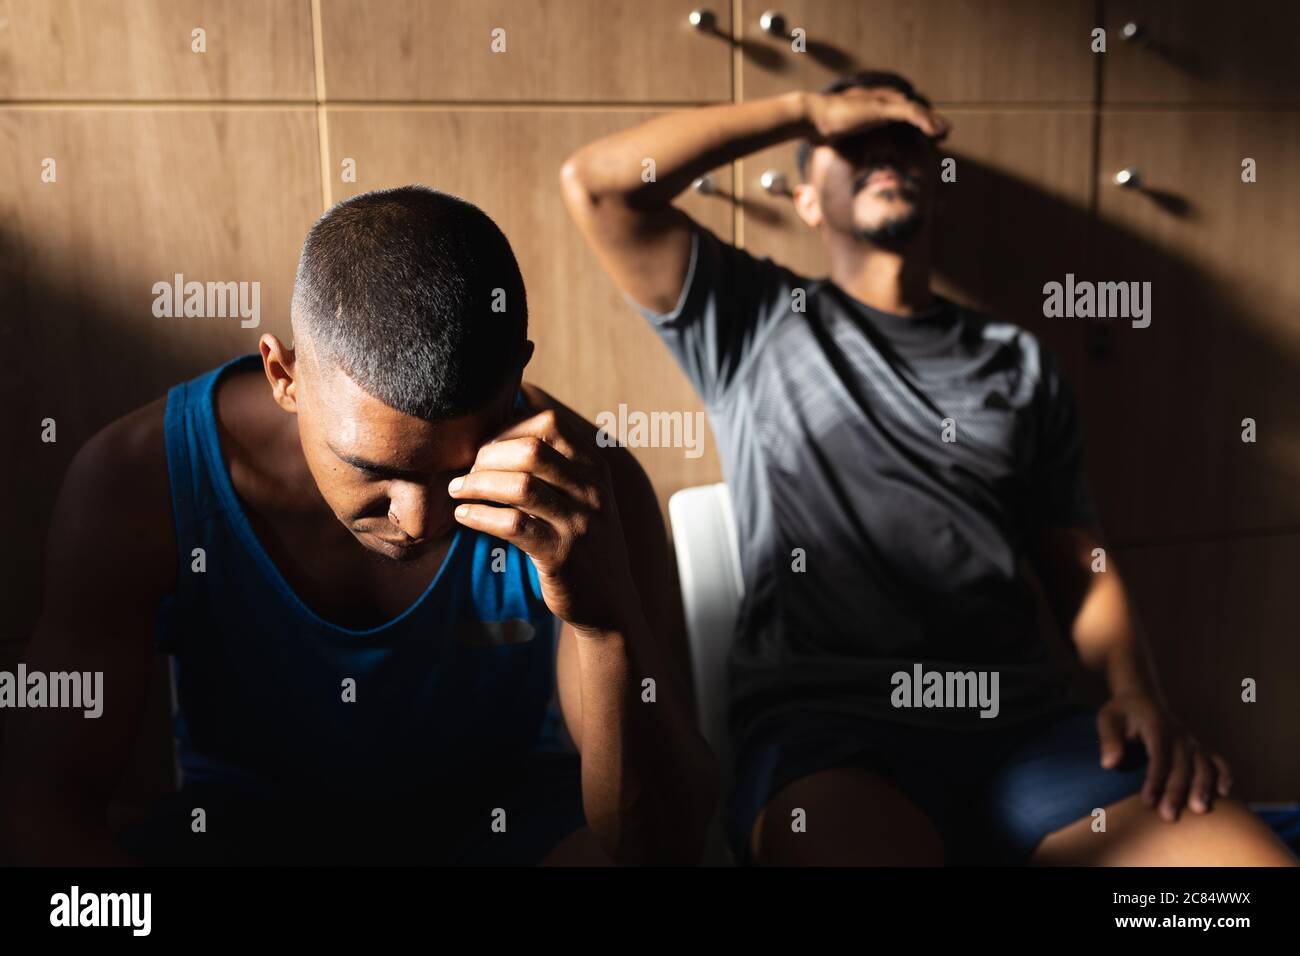 Deux joueurs de football de race mixte, hommes, portant des vêtements de sport assis dans le vestiaire pendant une pause dans le match, se reposant tenant leur tête étant disappo Banque D'Images